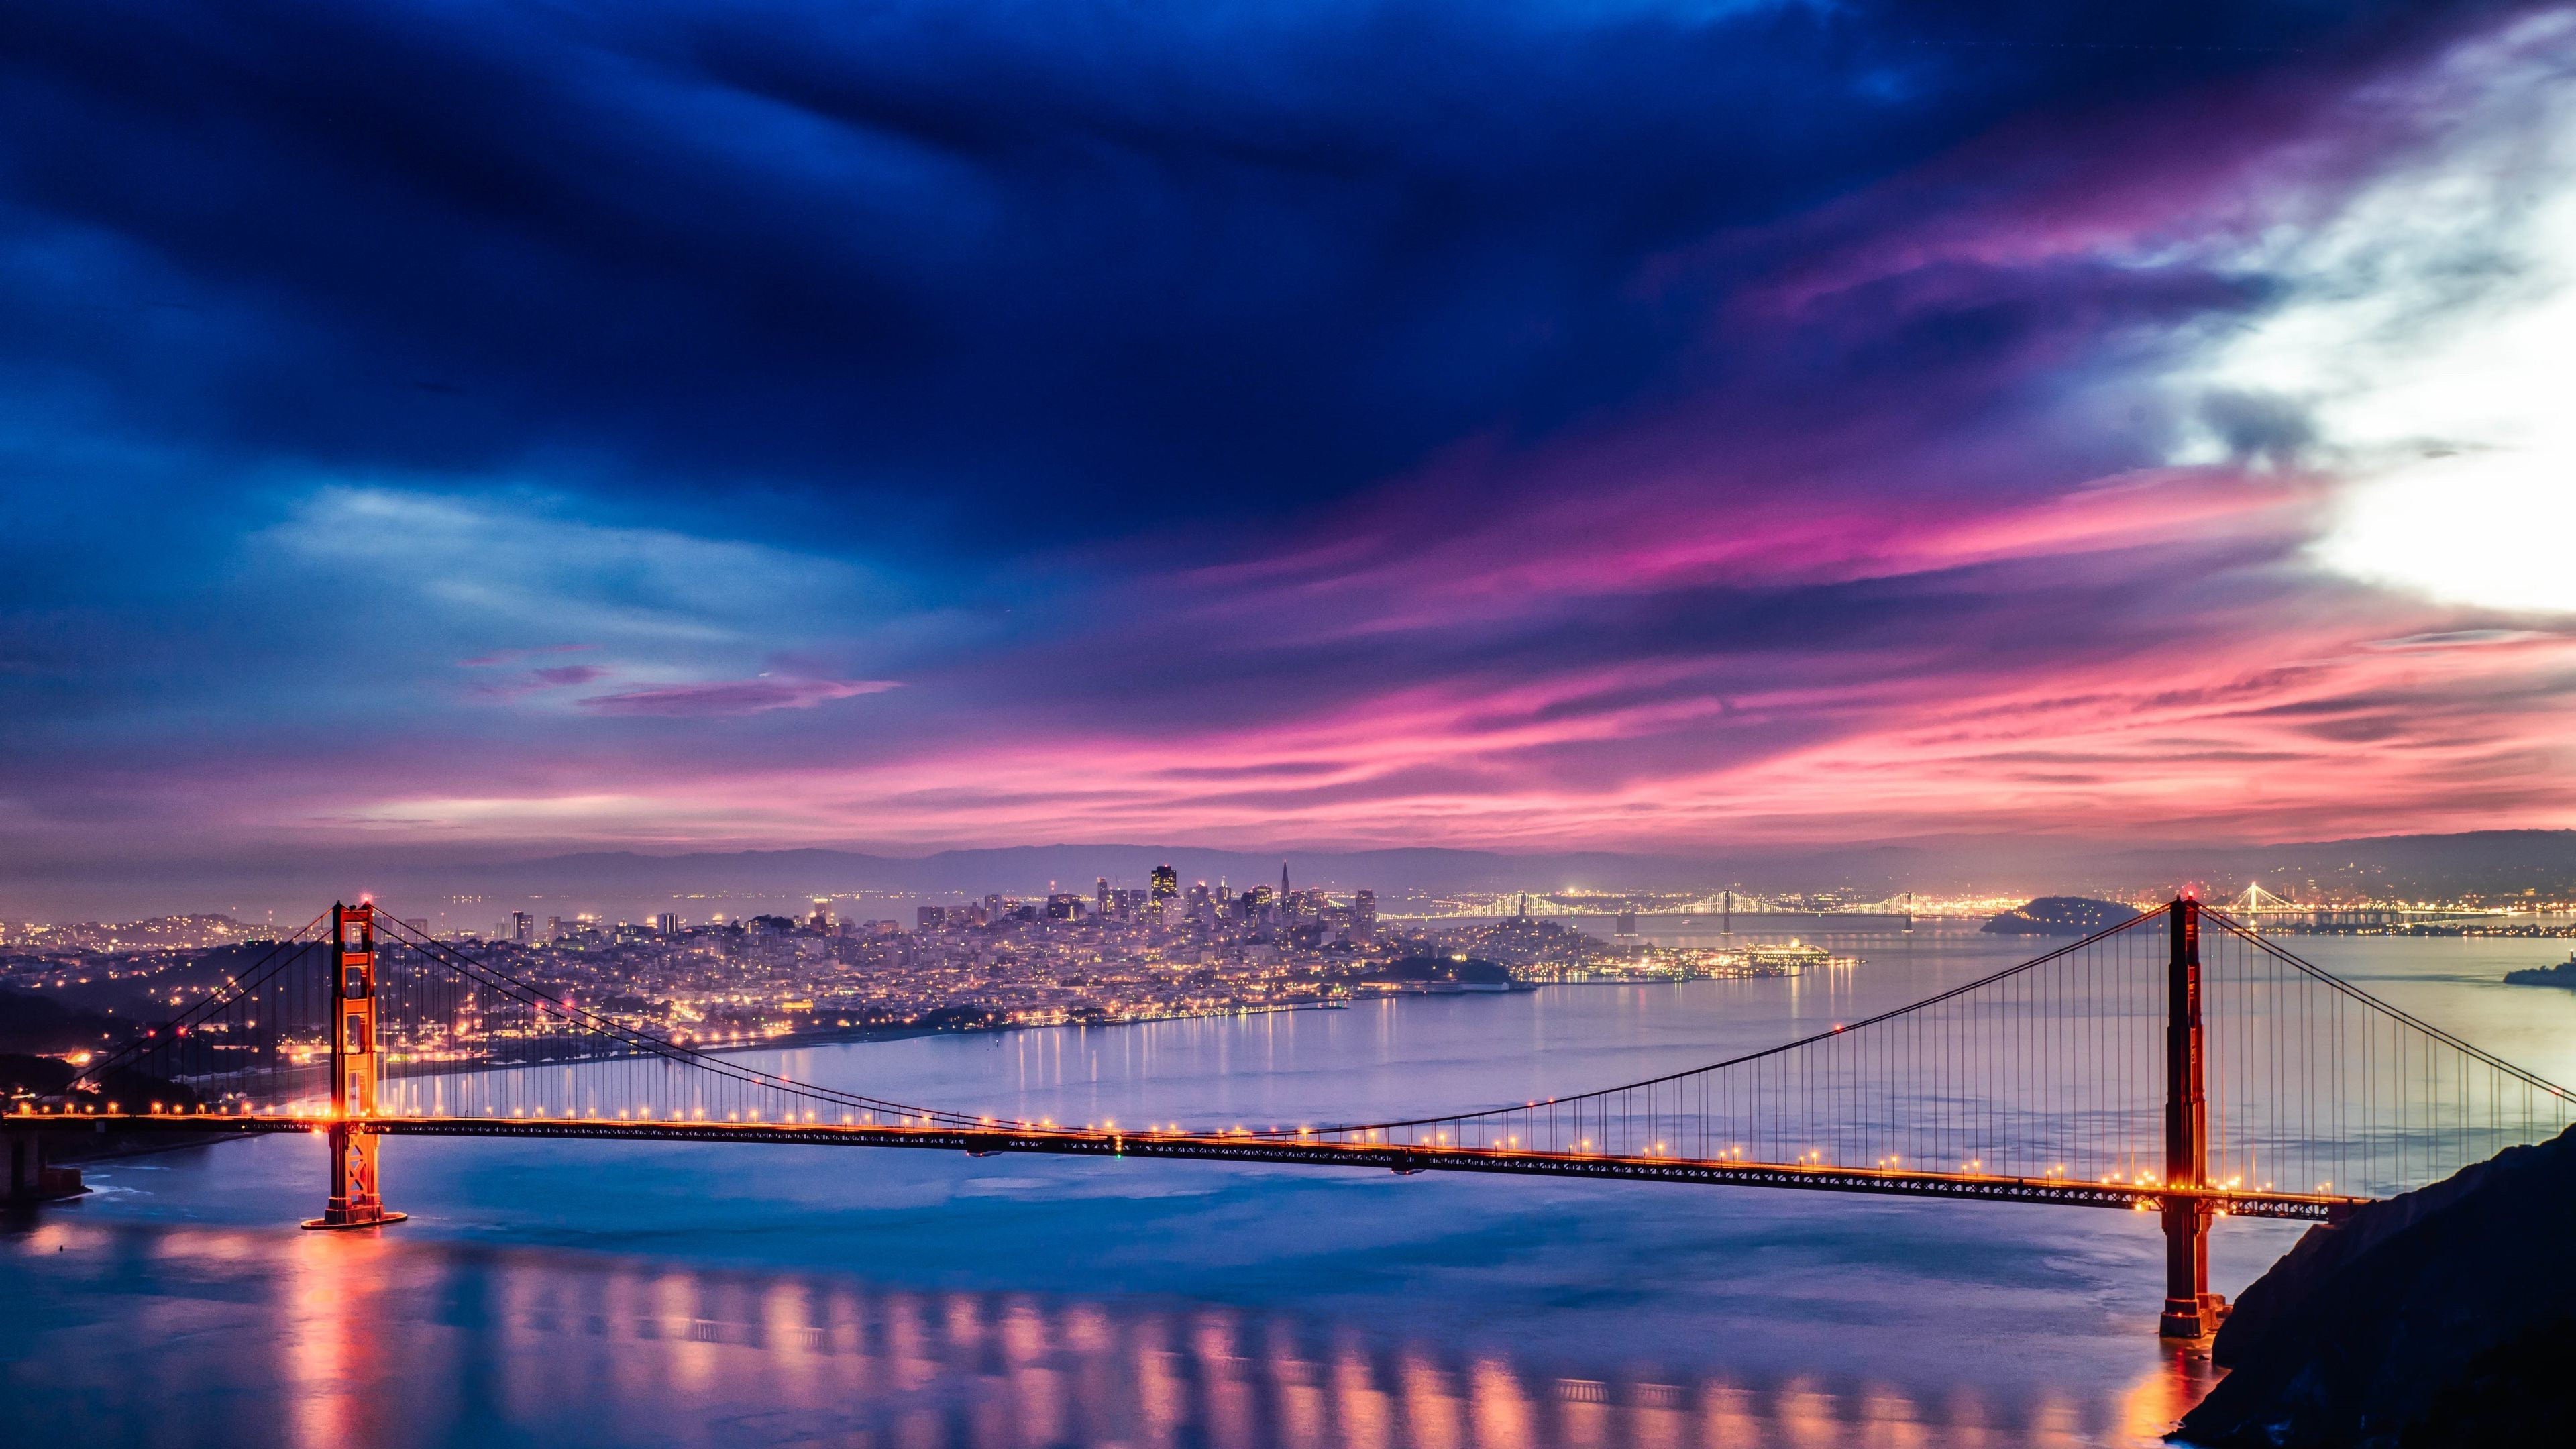 Best ideas about San Francisco Landscape
. Save or Pin landscape Urban Golden Gate Bridge San Francisco Now.